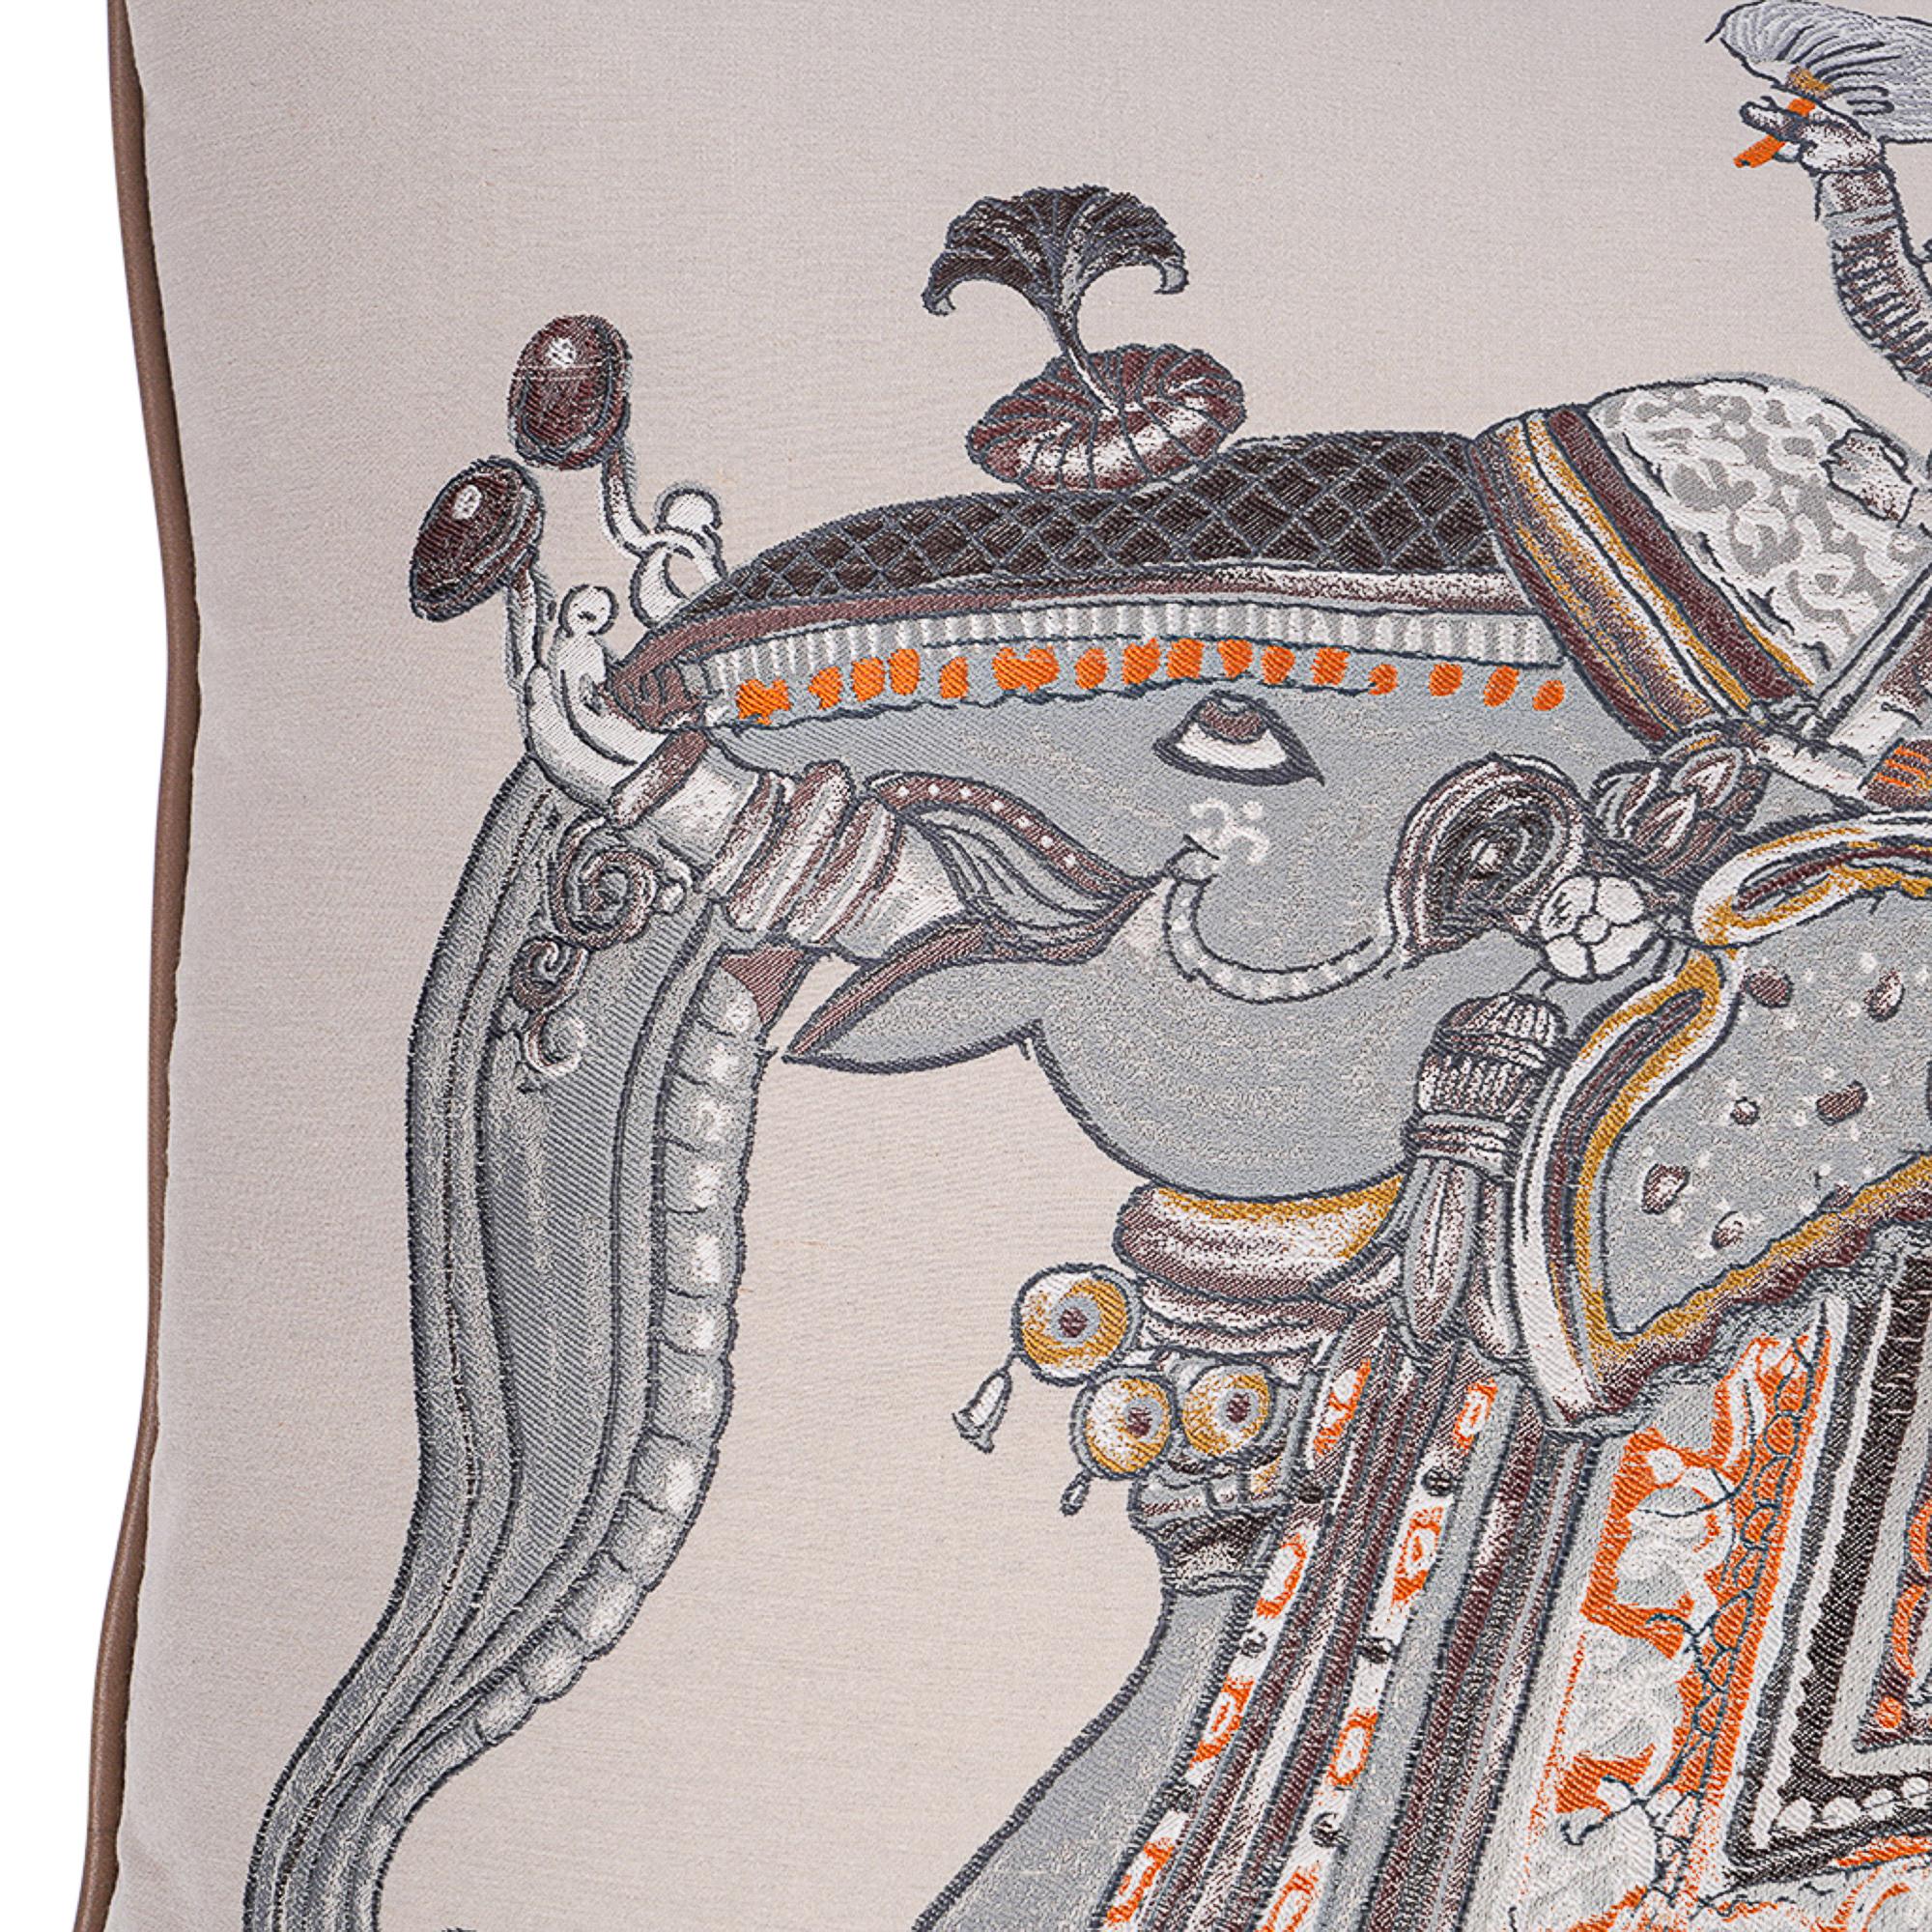 Mightychic bietet ein extrem seltenes Hermes Beloved India GM Pillow an.
Entworfen von Philippe Dumas im Jahr 2009.
Der abnehmbare Bezug besteht aus Seide, Baumwolle und Viskose.
Die Farben sind Braun, Grau und Orange
Das Design ist eine Hommage an